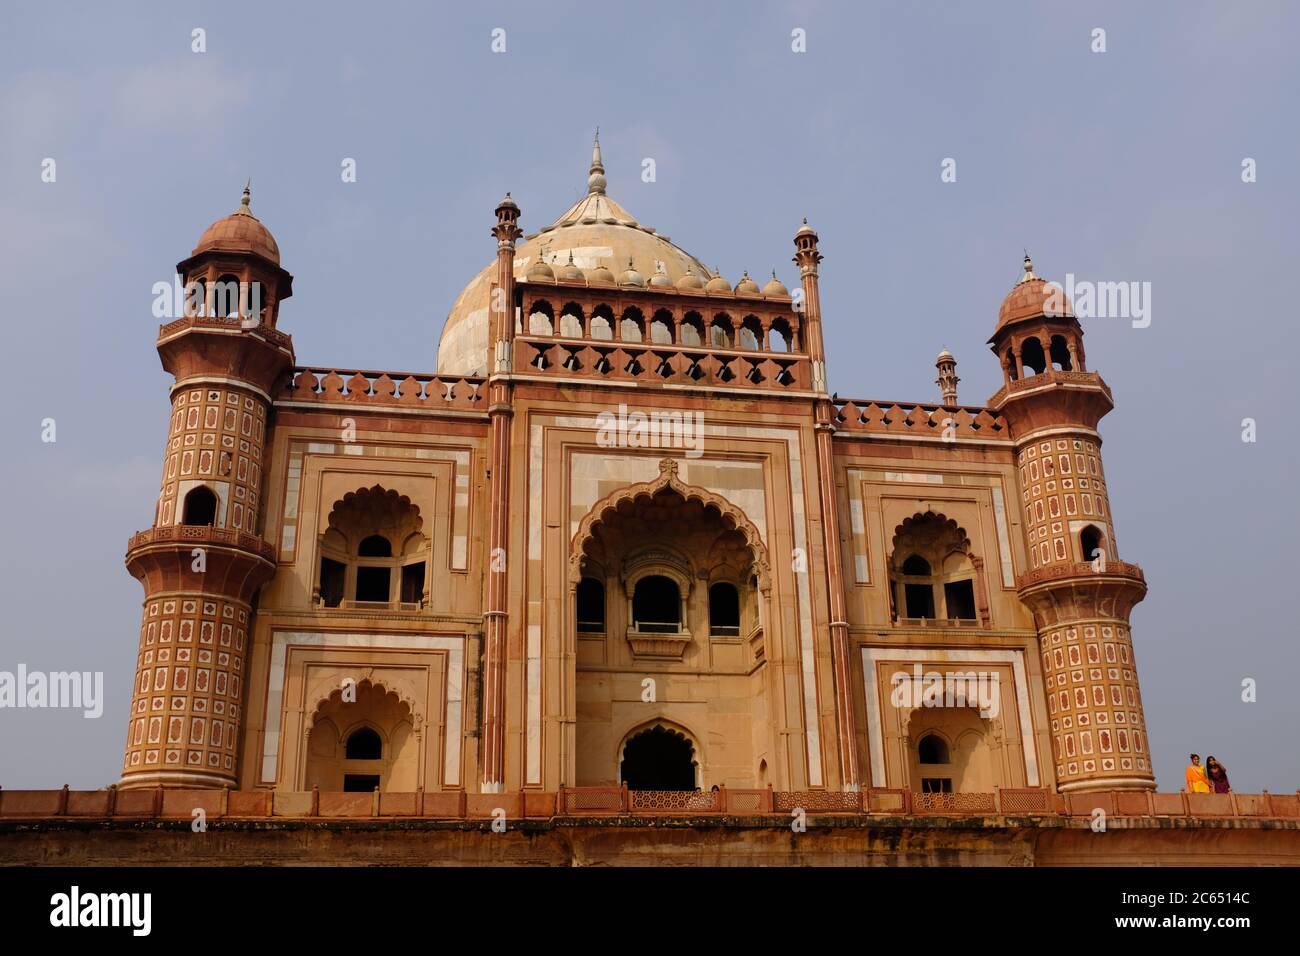 Vista del mausoleo de Safdar Jang, Delhi, India Foto de stock